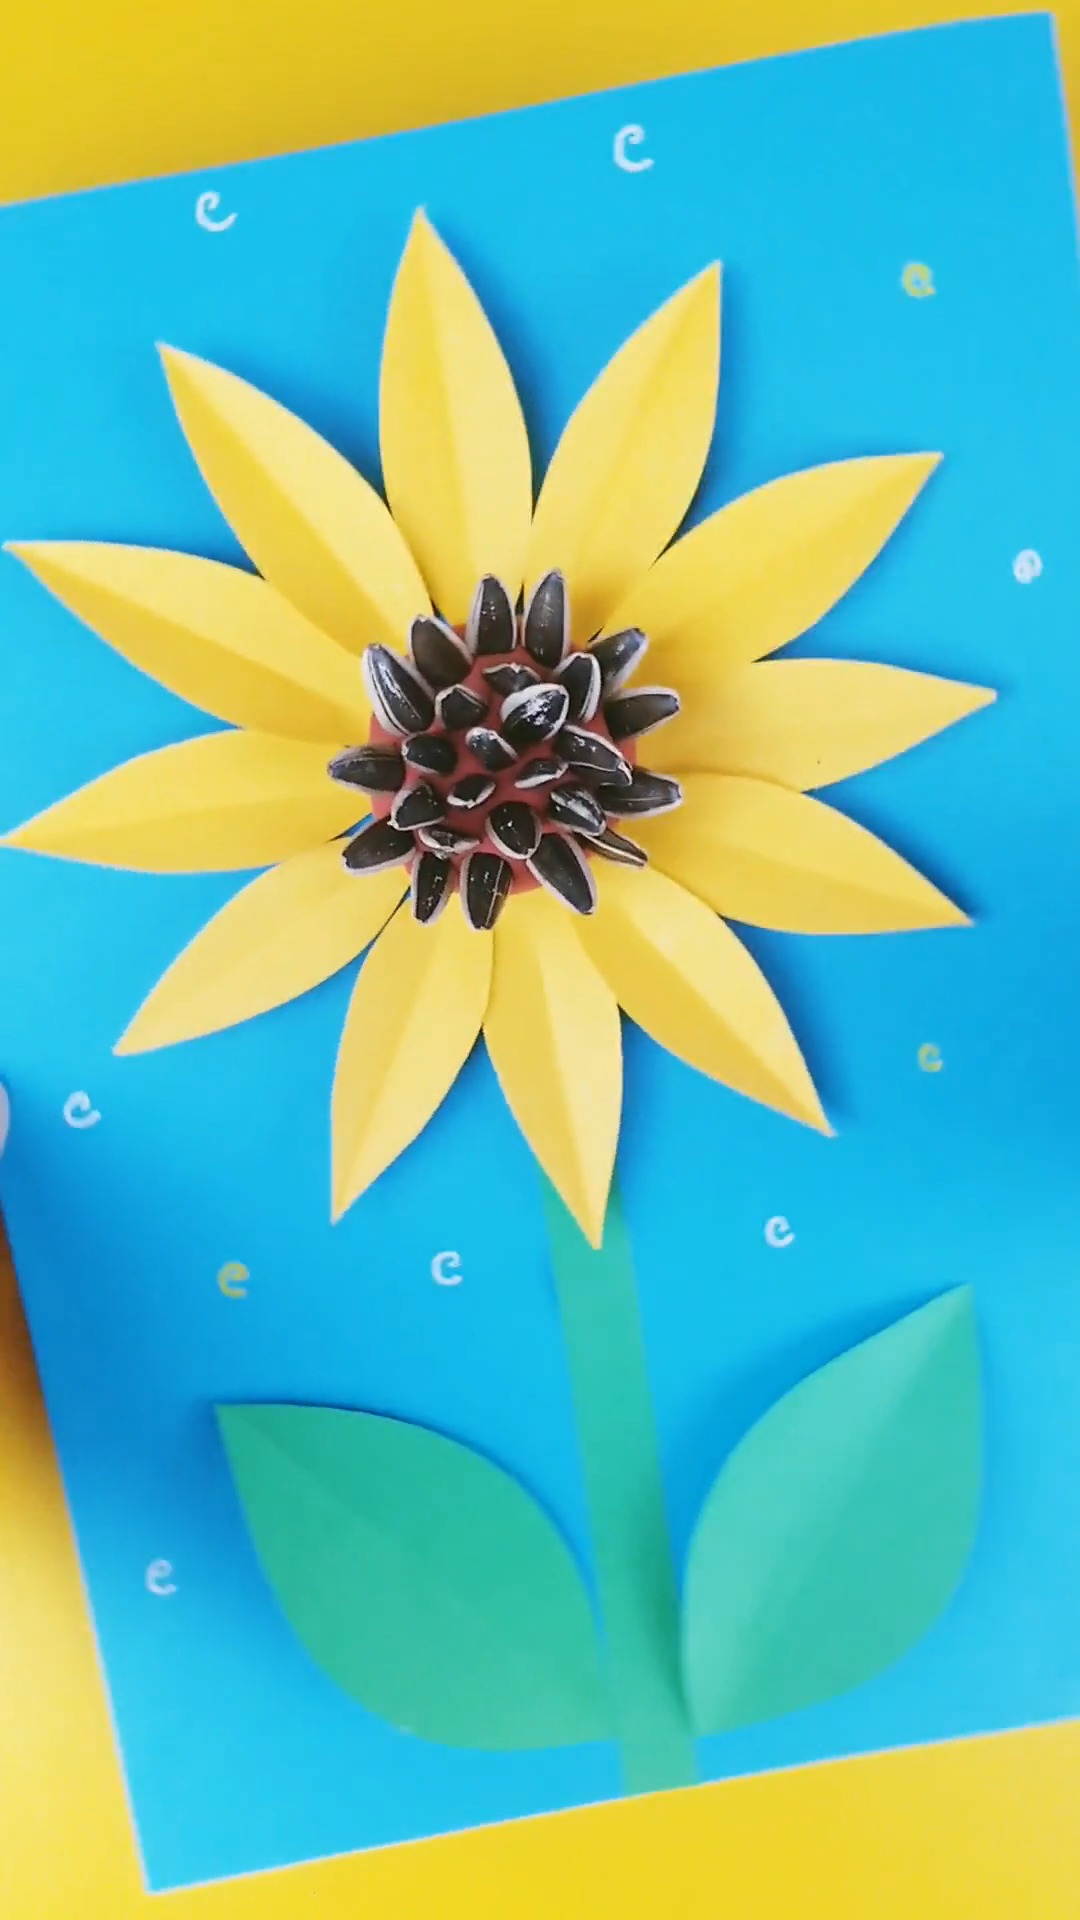 怎样用瓜子壳做向日葵拼贴画?